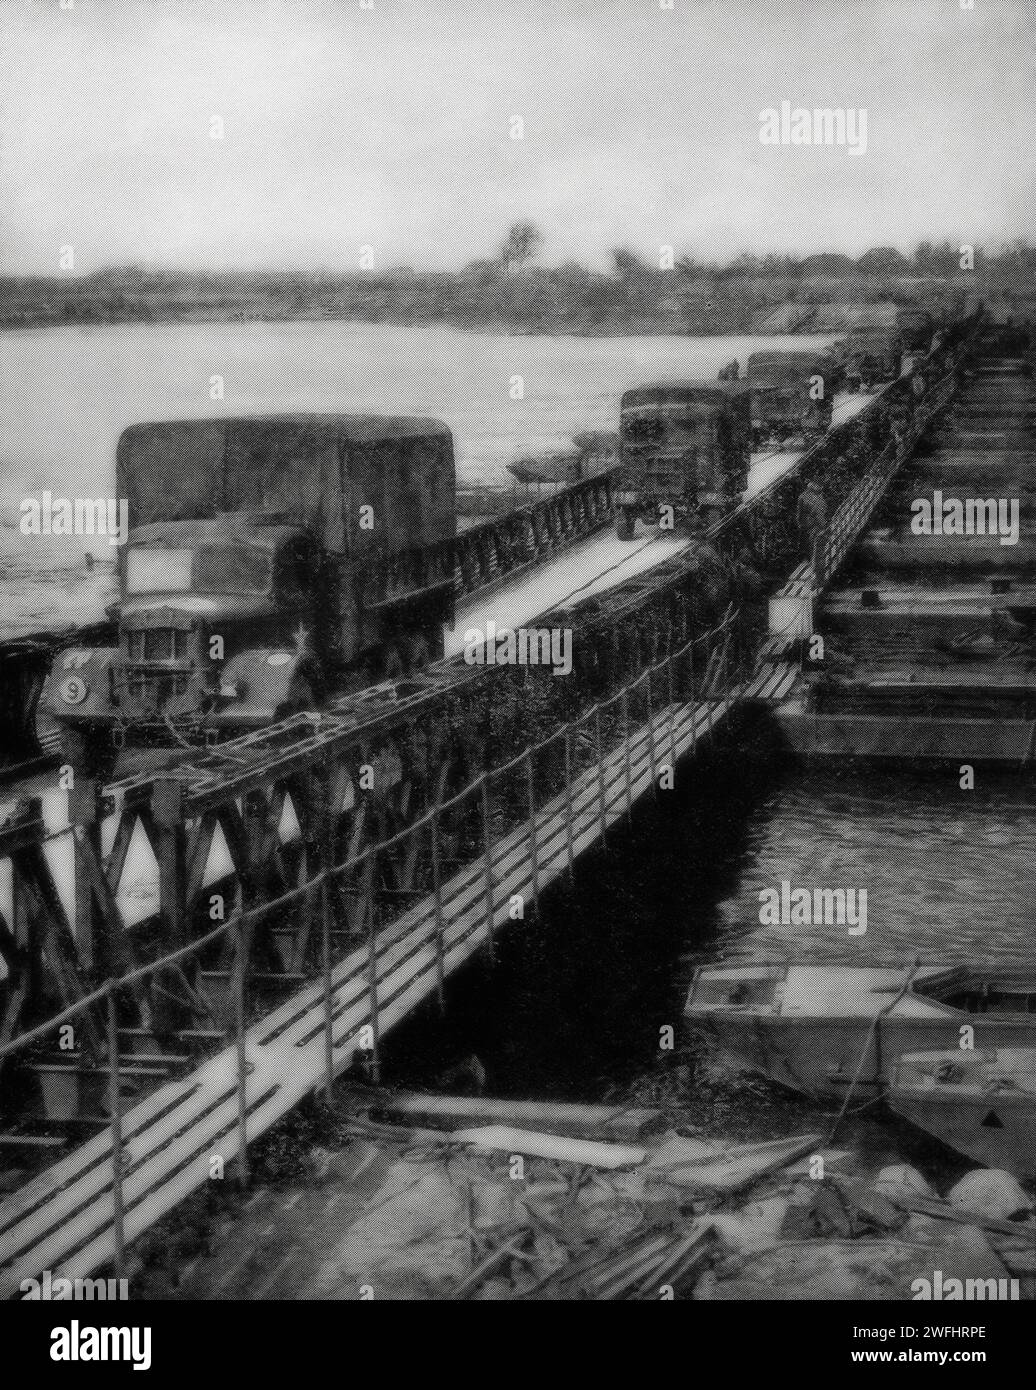 Le 25 mars 1945, les approvisionnements alliés se déversent à travers un pont flottant sur le Rhin en Allemagne pendant les derniers jours de la Seconde Guerre mondiale en Europe. Banque D'Images